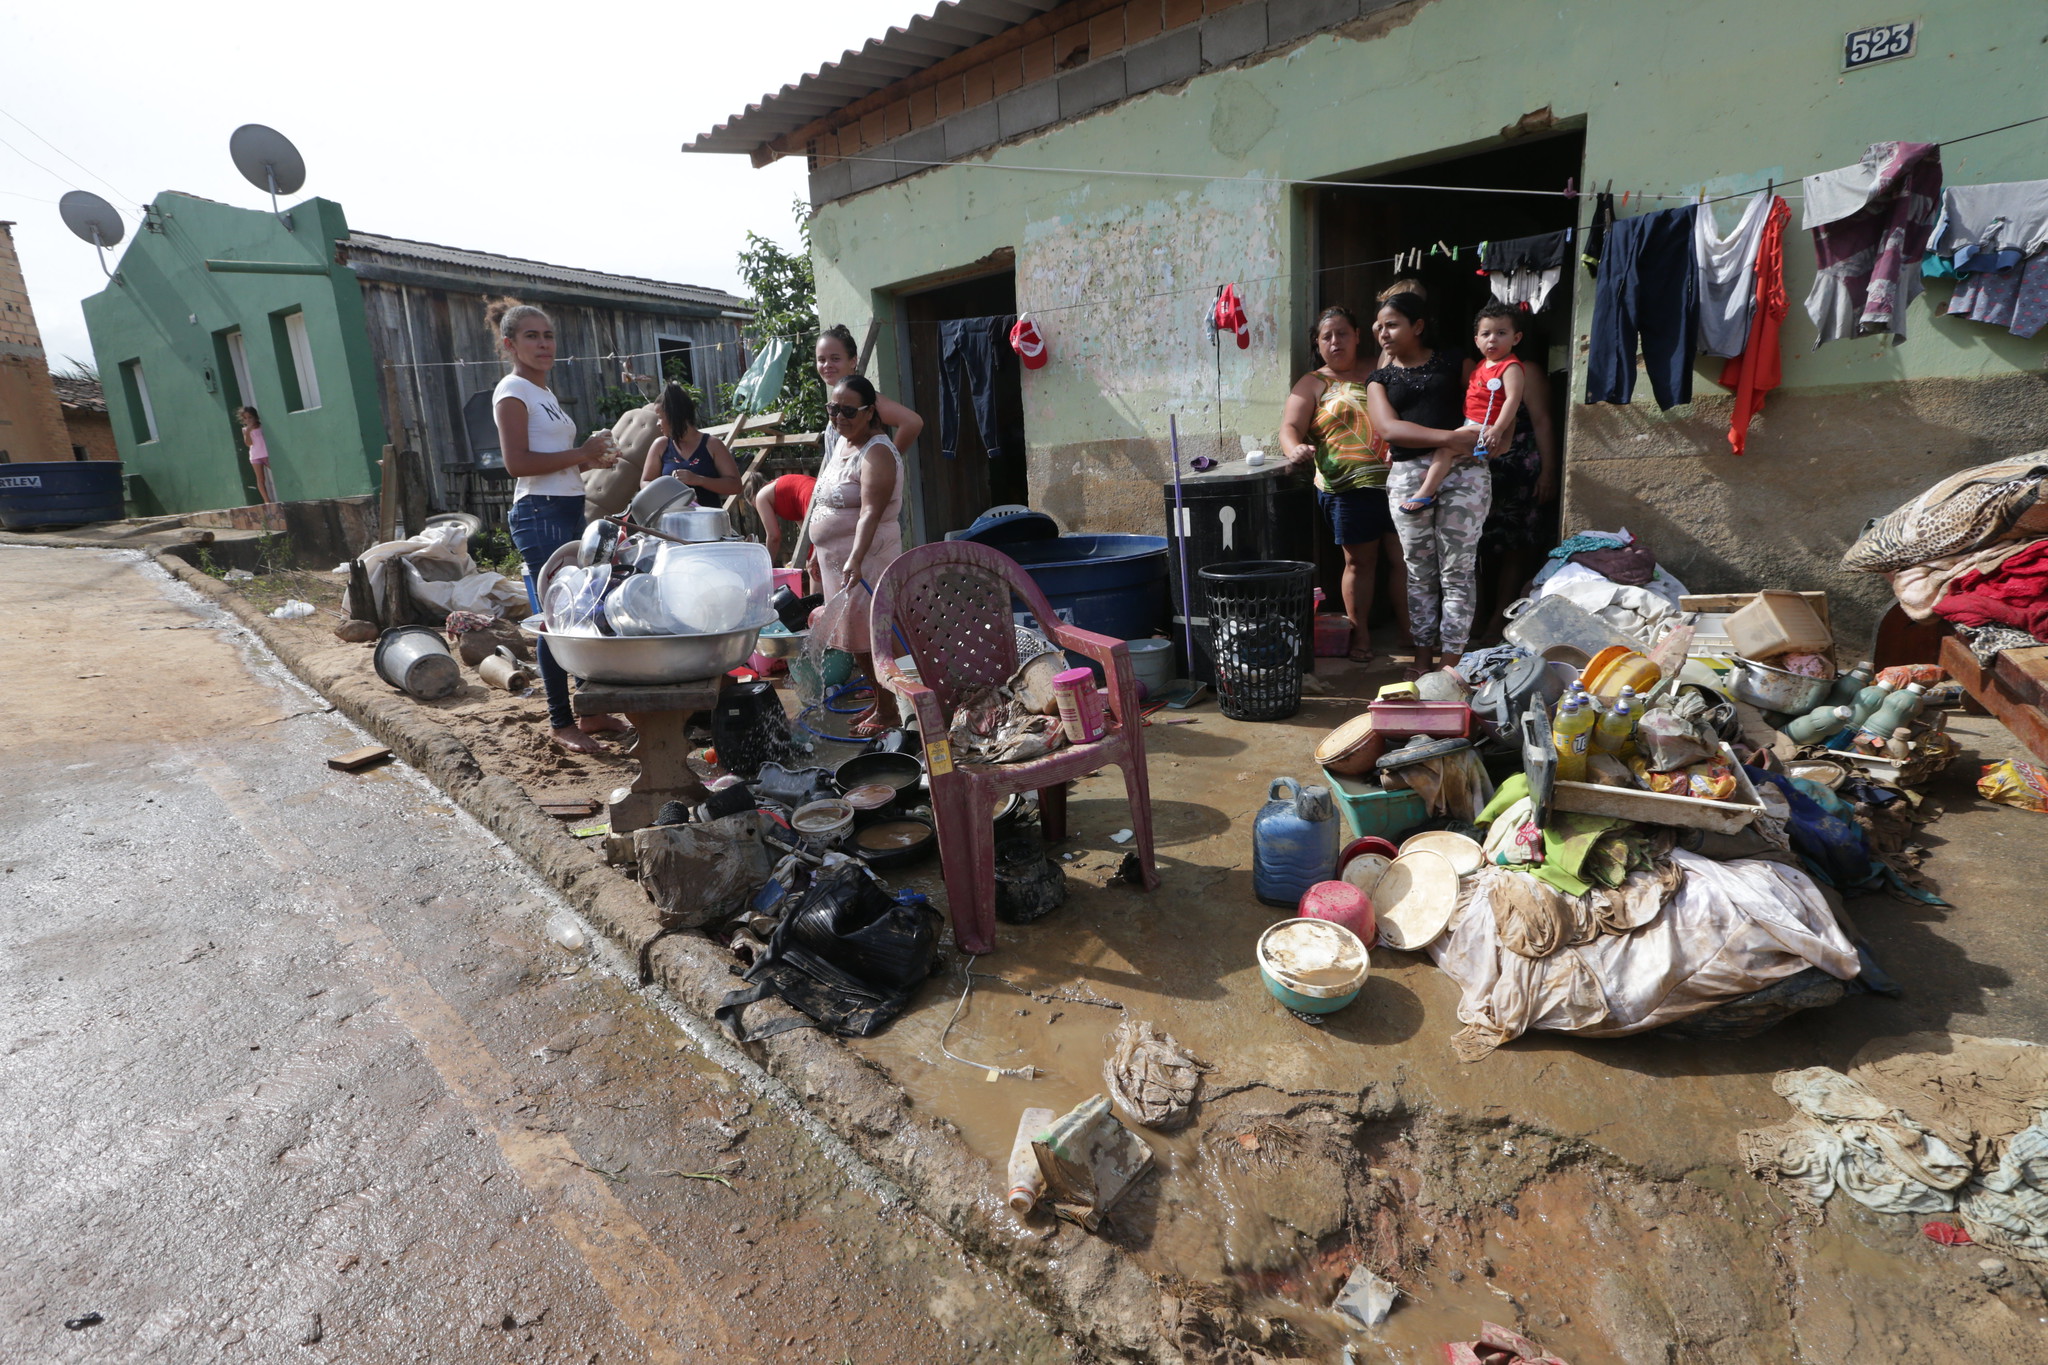 Aldeas Infantiles SOS pone en marcha un Programa de Respuesta a Emergencias en Brasil para atender a las familias afectadas por las inundaciones